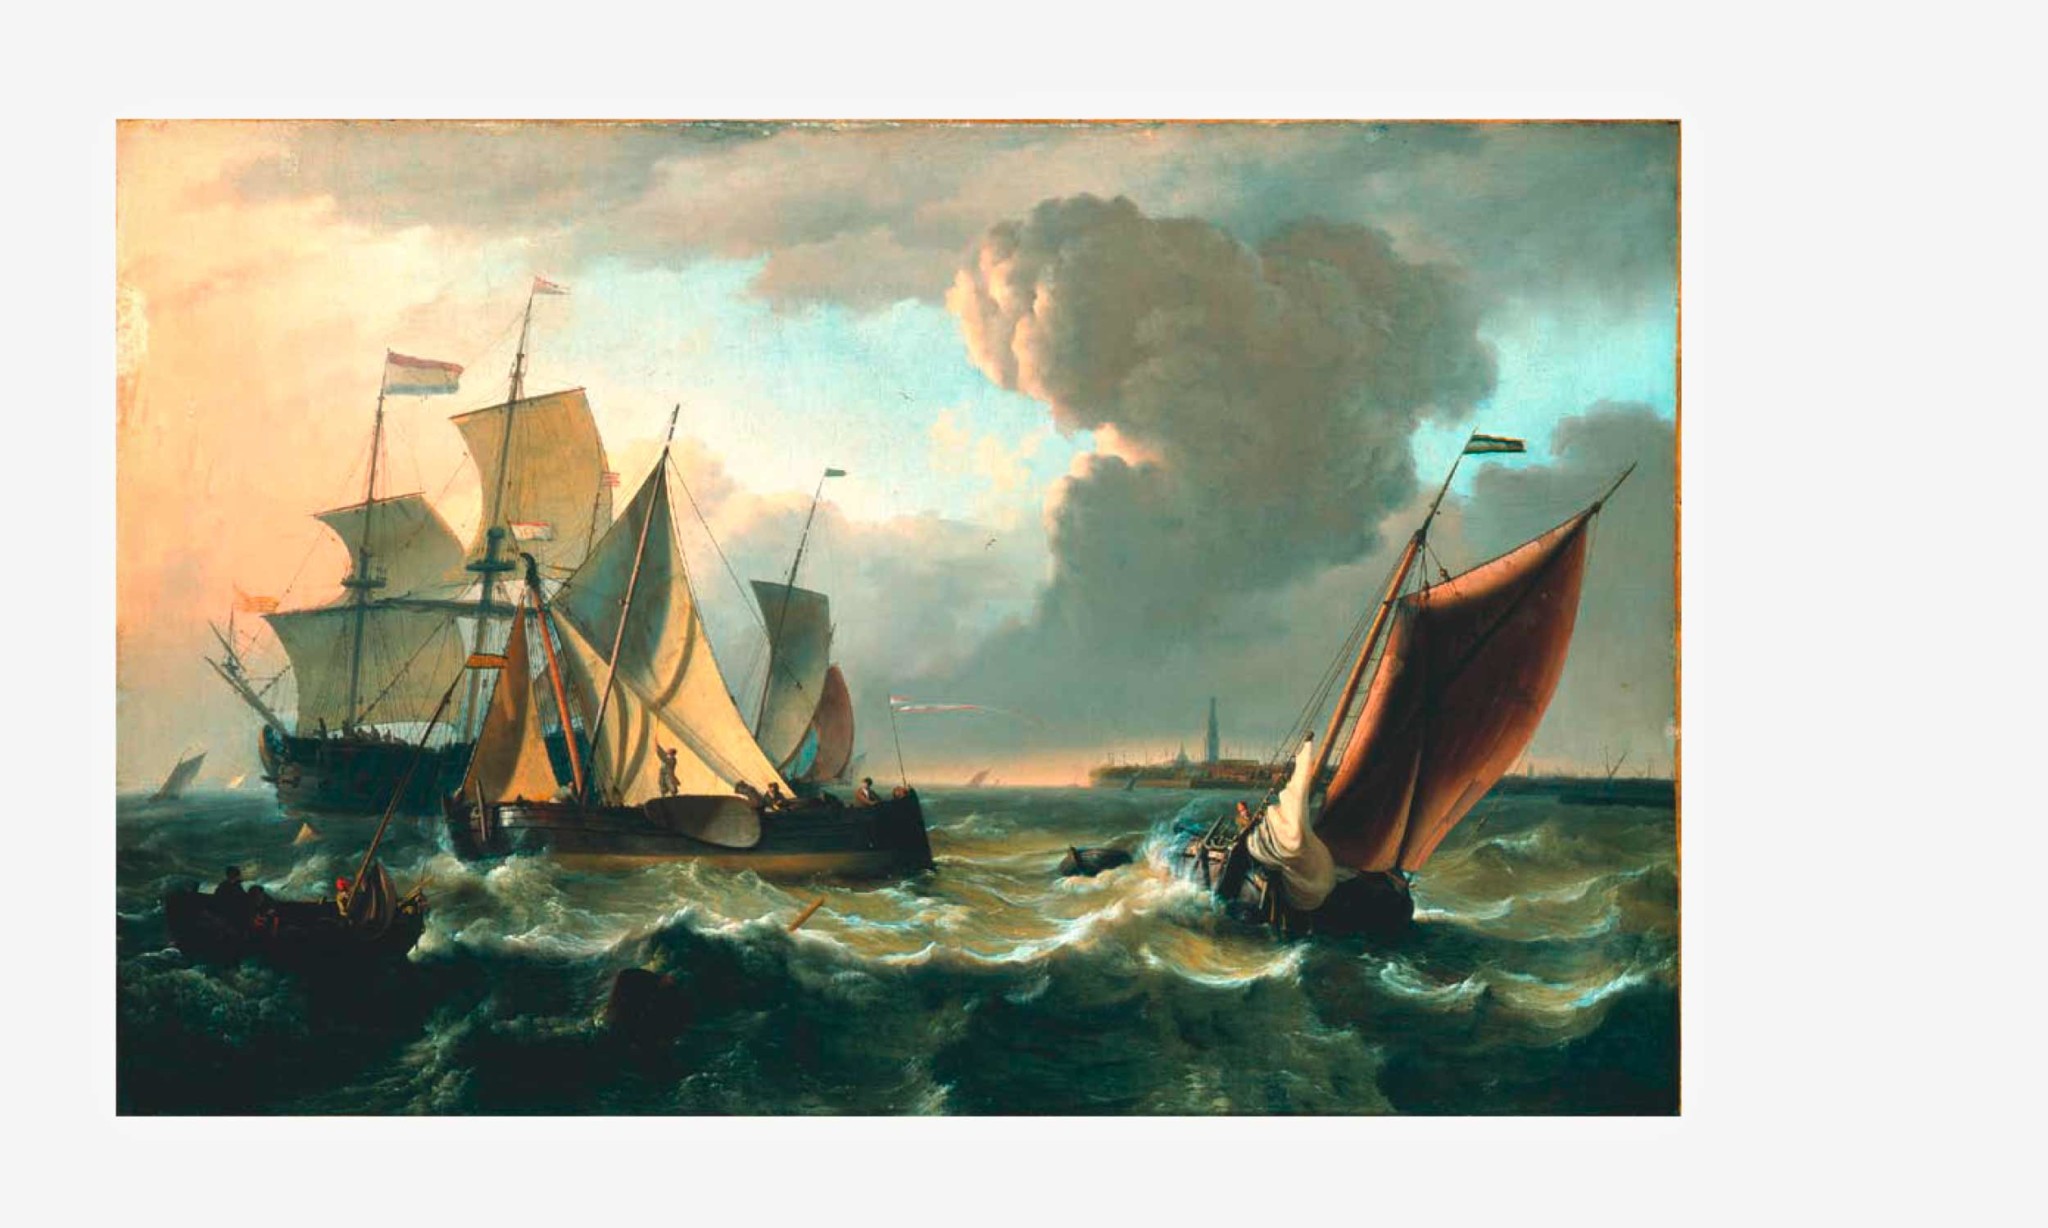 Eine Abbildung des Gemäldes Bewegte See mit Schiffen des holländischen Malers Ludolf Backhuyzen. Es zeigt vier verschiedene Segelschiffe auf See bei starkem Wellengang. Am Horizont eine Insel, auf der ein Leuchtturm steht.